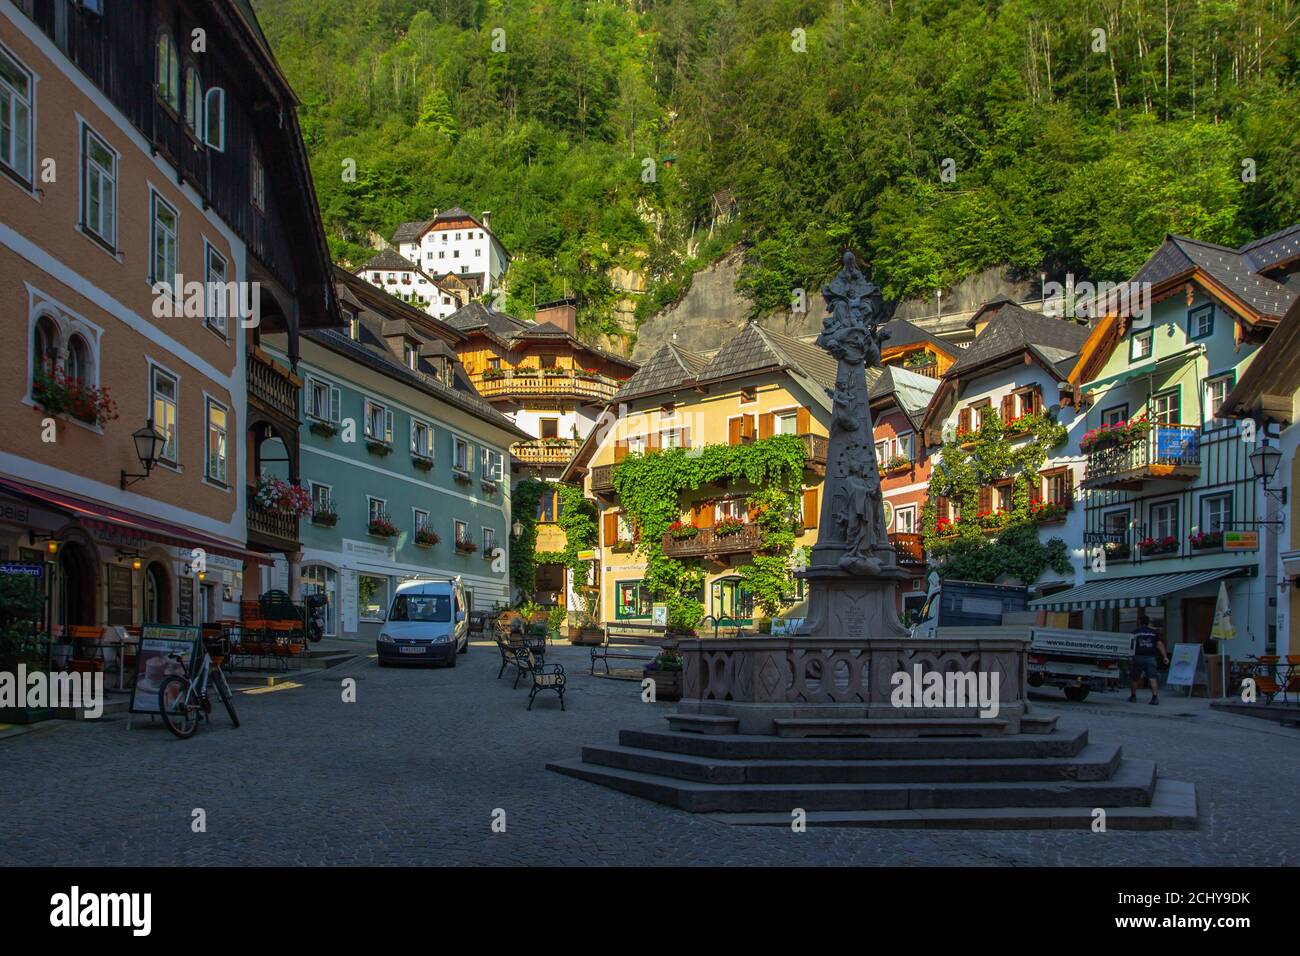 Hallstatt, Austria - 10 agosto 2020. Famosa e bella città montana austriaca con case in legno situata nella regione di Salzkammergut. Sito europeo dell'UNESCO Foto Stock